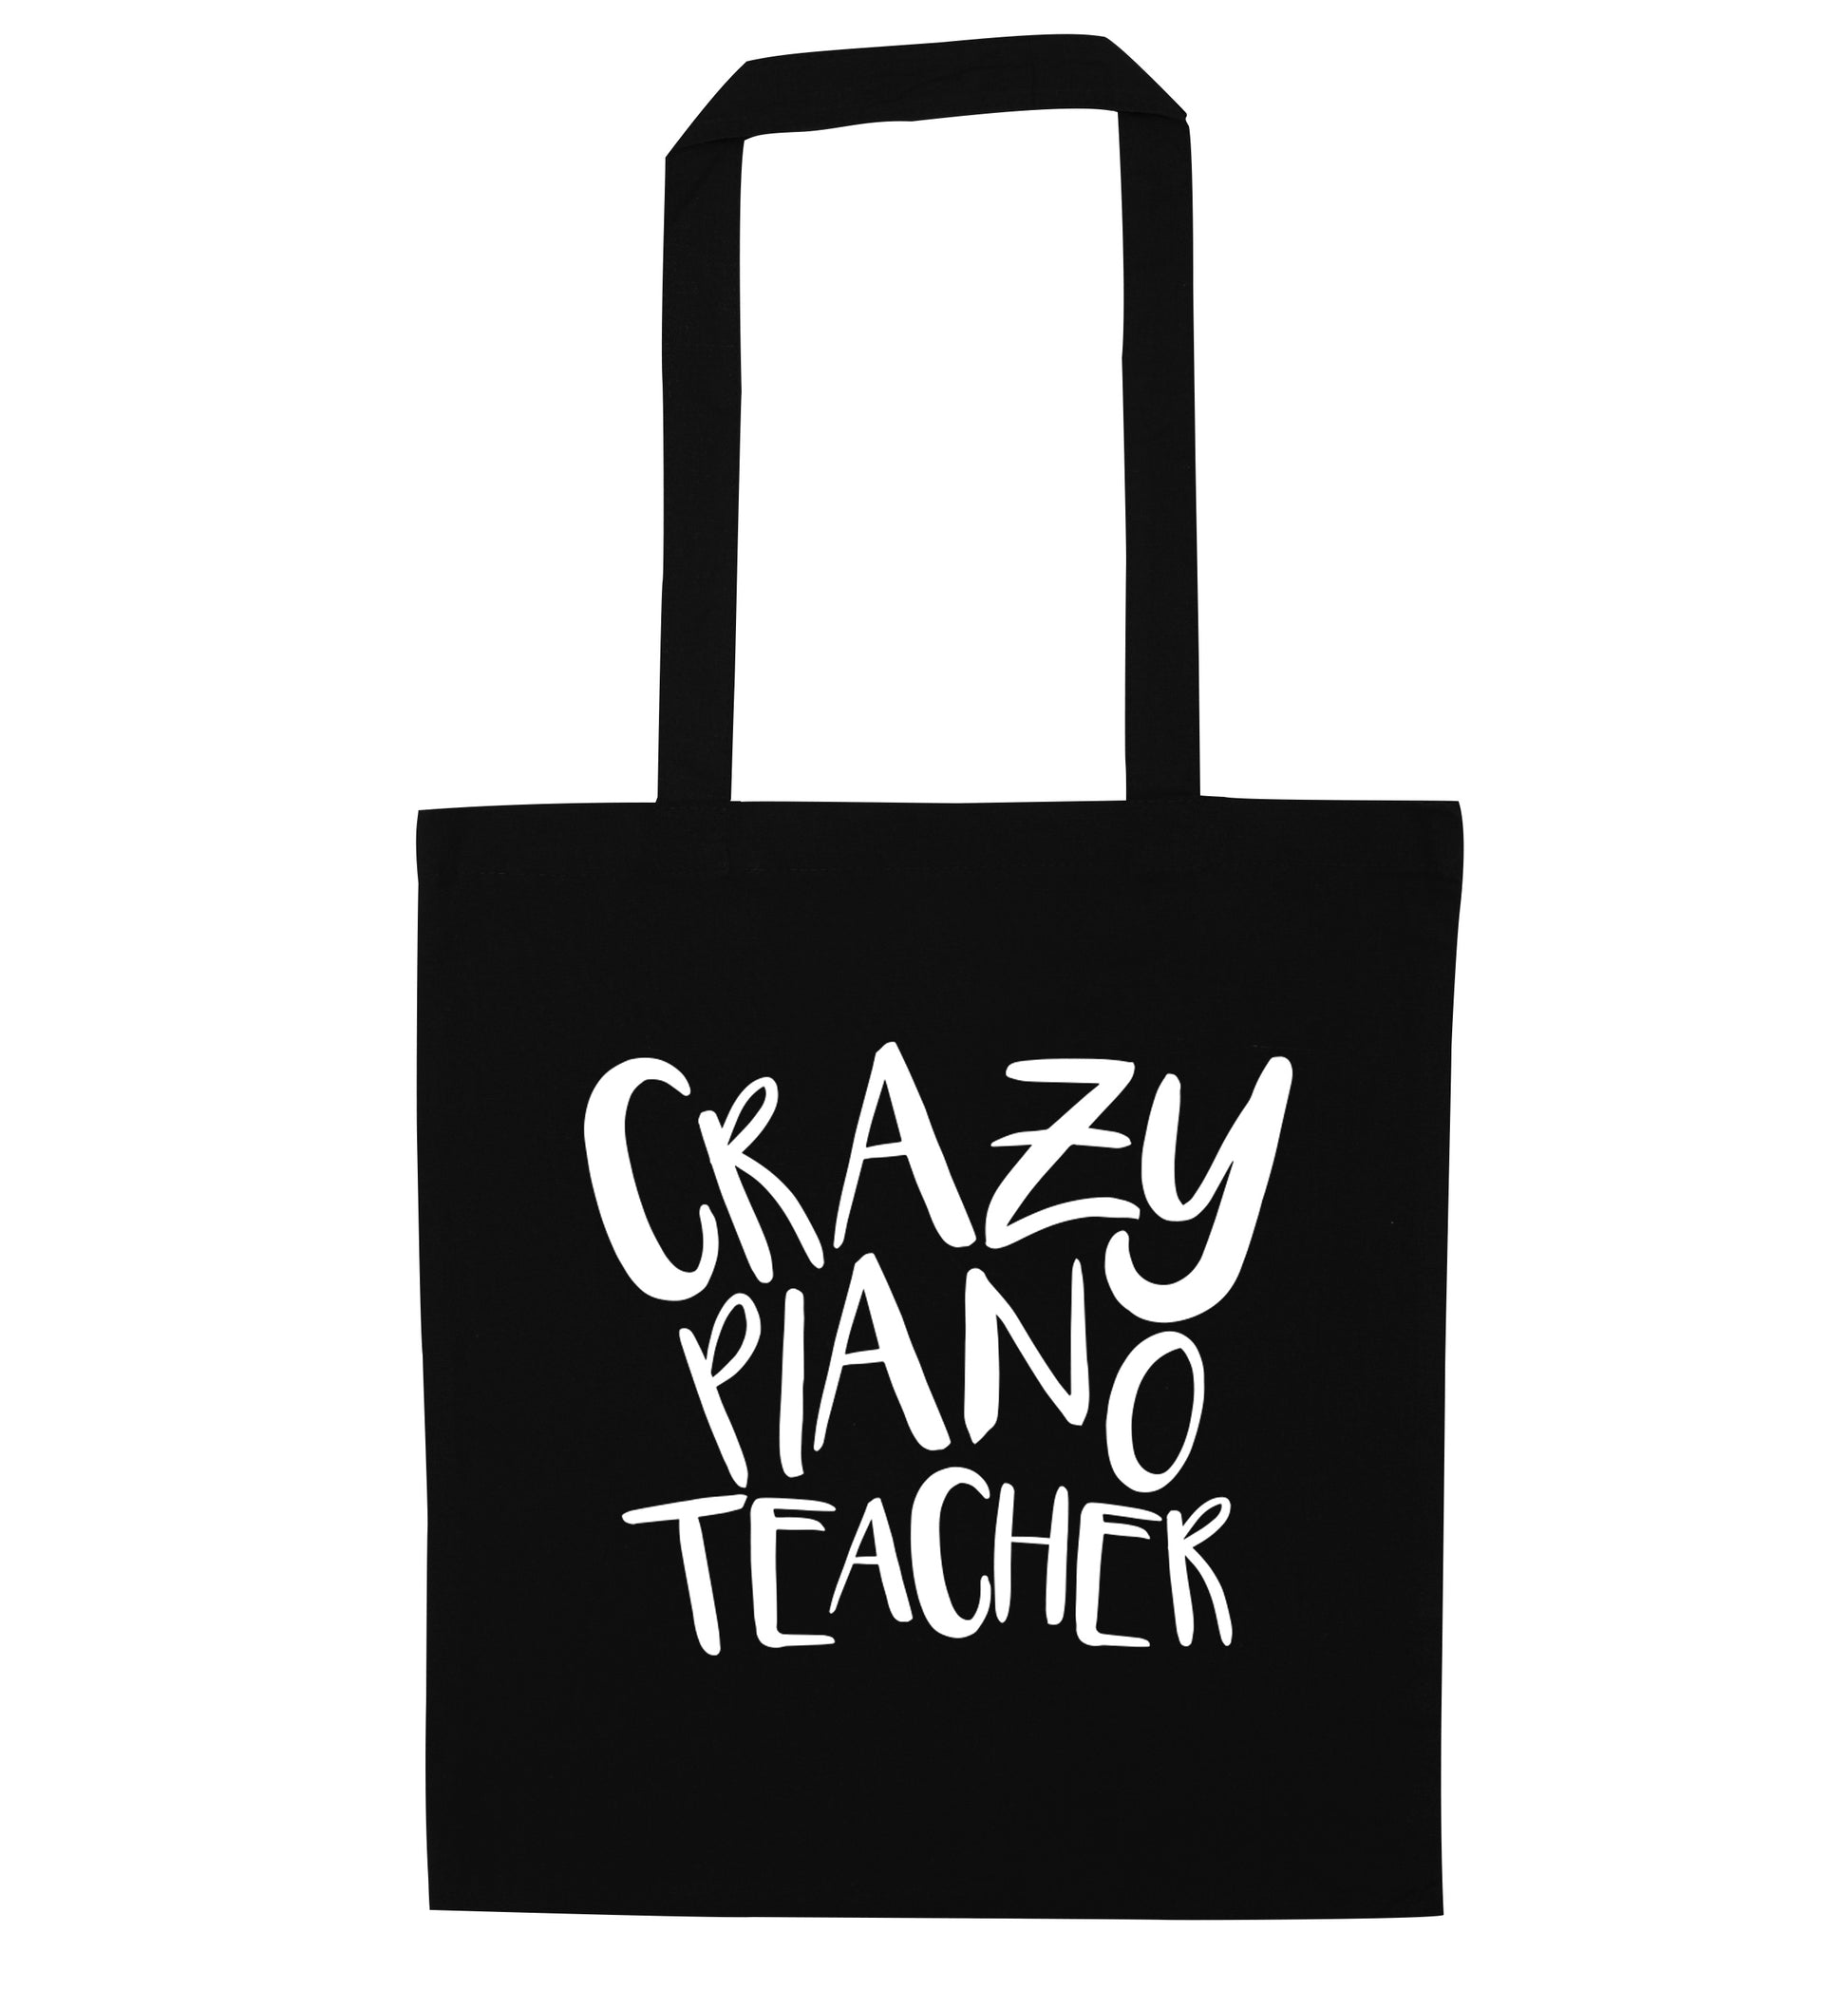 Crazy piano teacher black tote bag